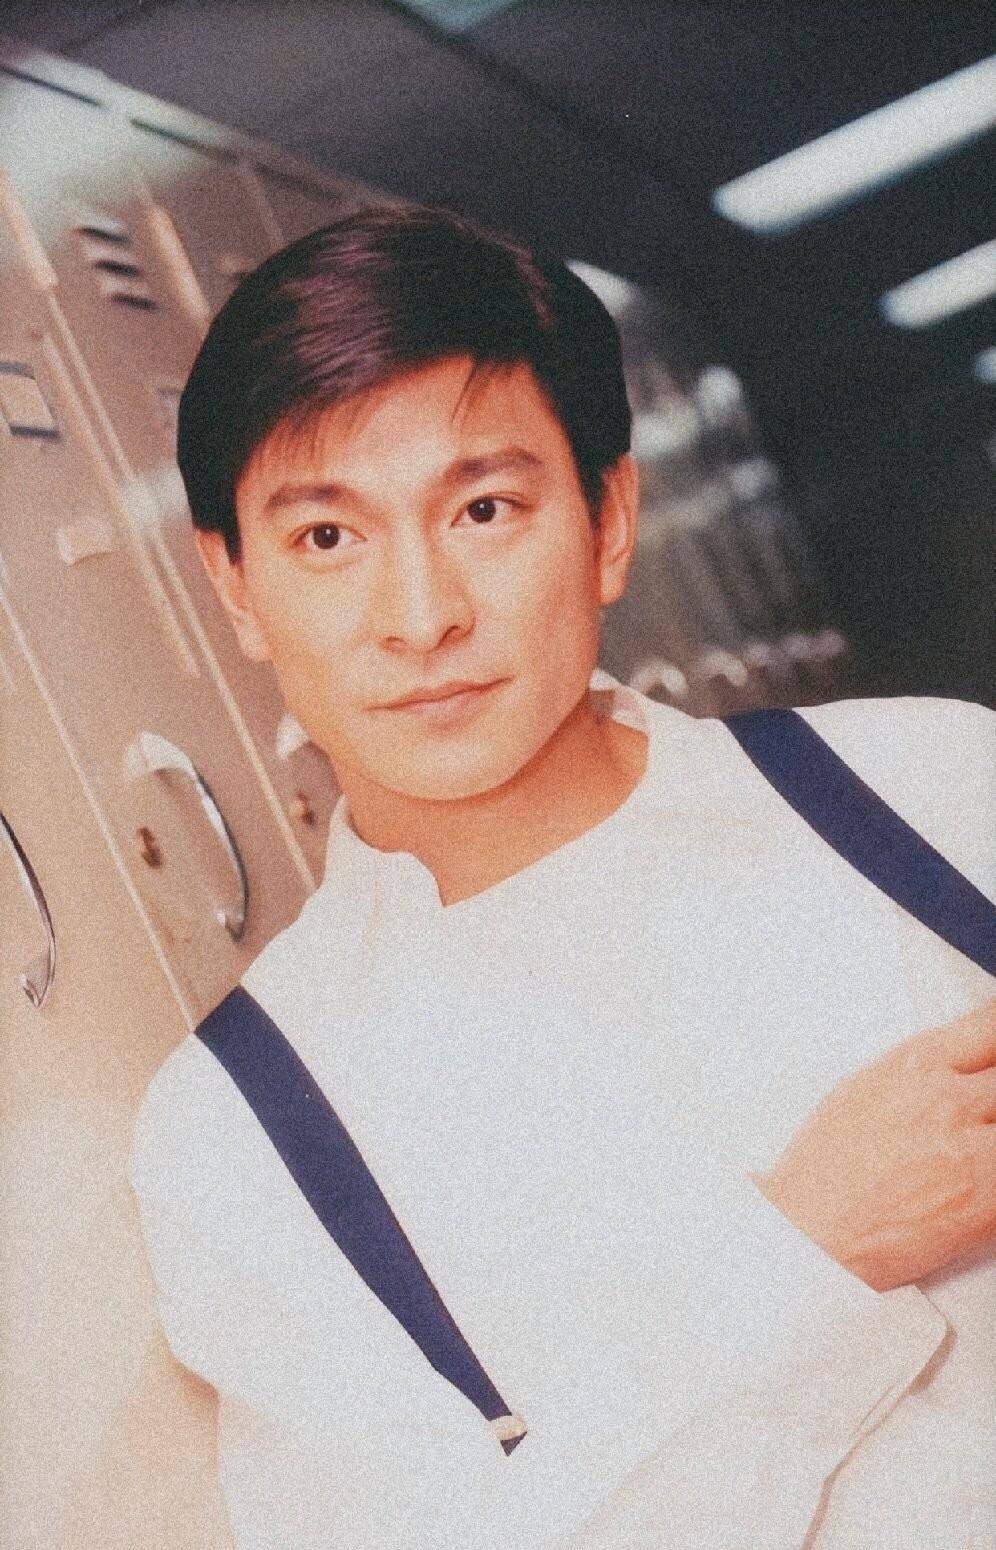 刘德华1993年图片